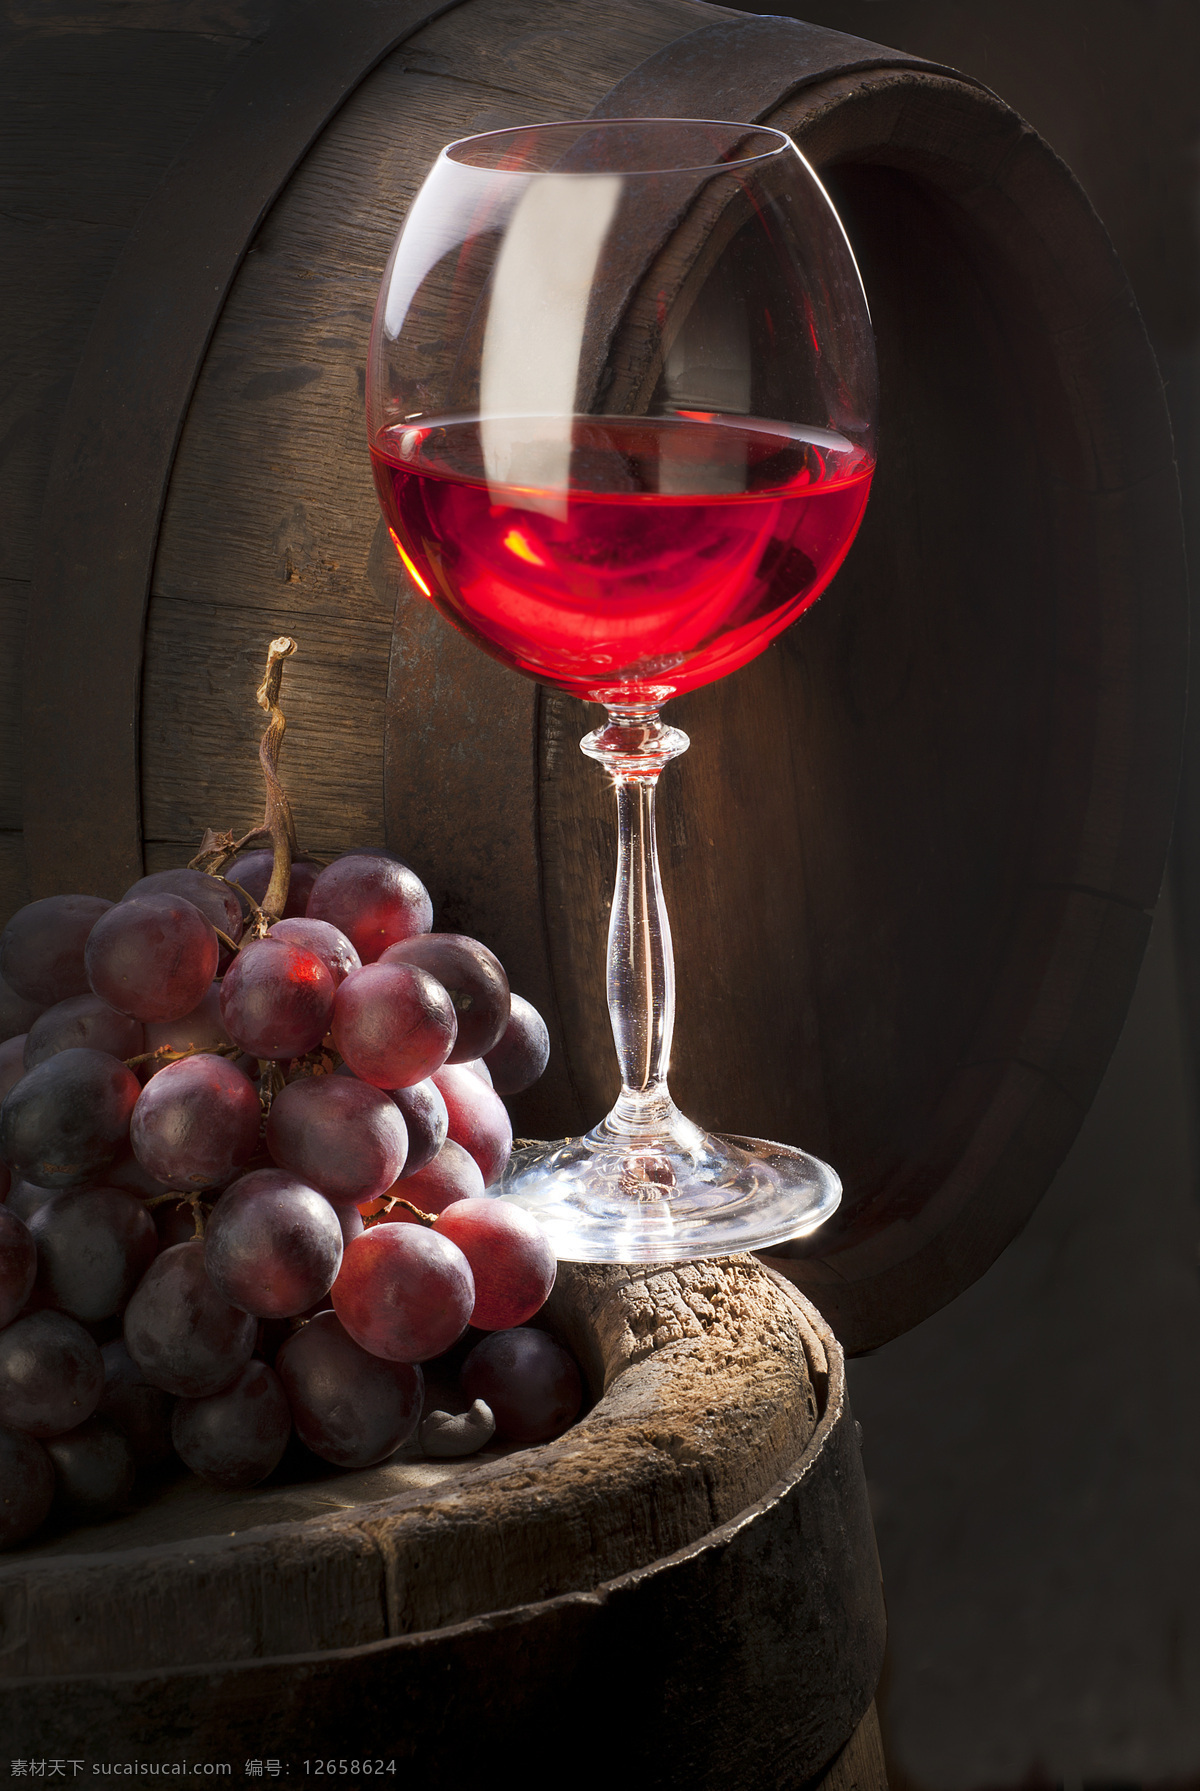 红酒 葡萄 葡萄酒 瓶塞 酒瓶 酒水饮料 餐饮美食 酒桶 红酒和葡萄 酒类图片